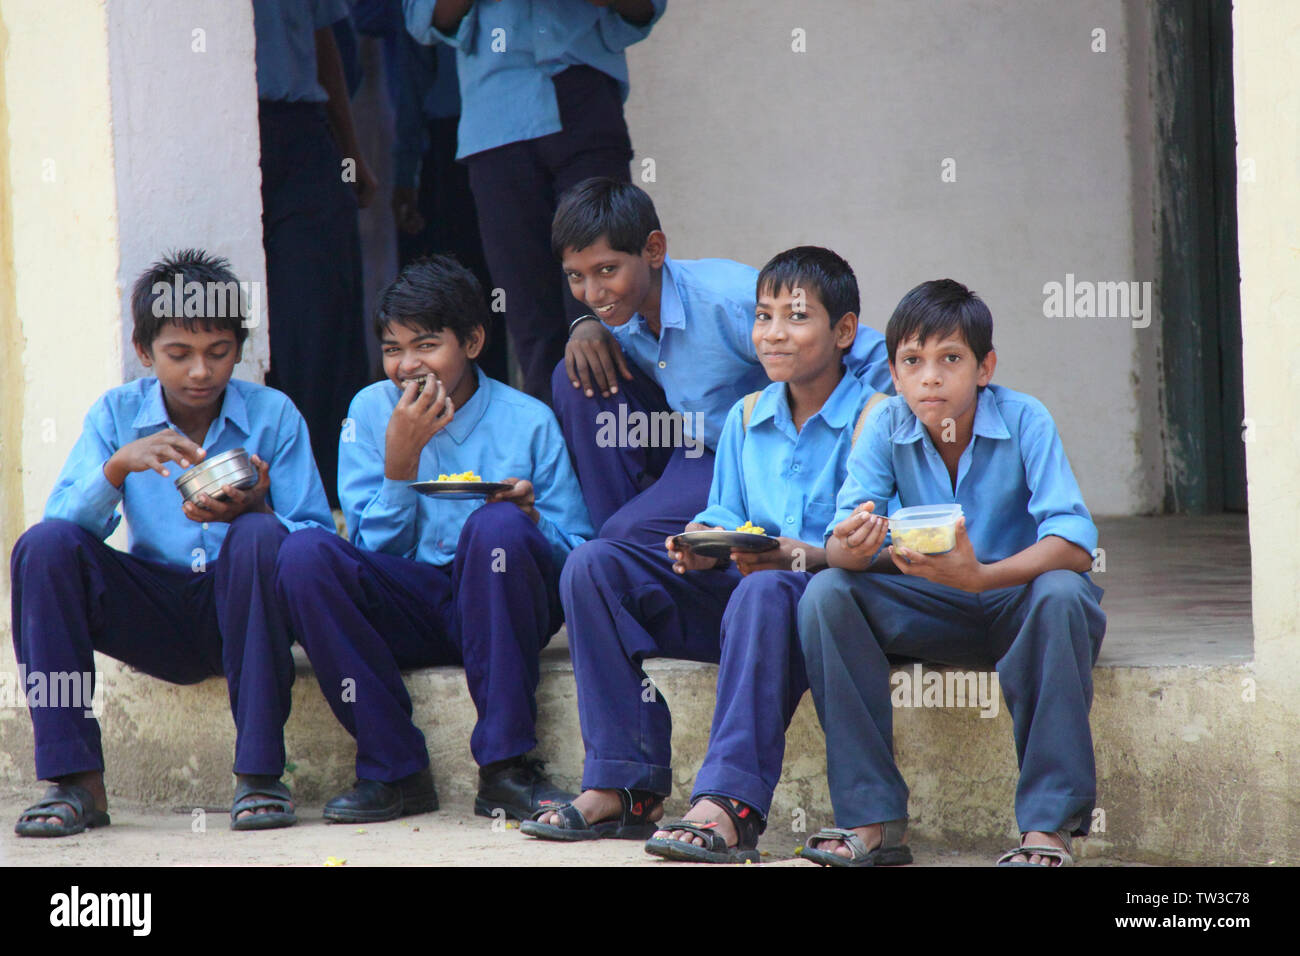 Les étudiants déjeunant dans une école, Inde Banque D'Images